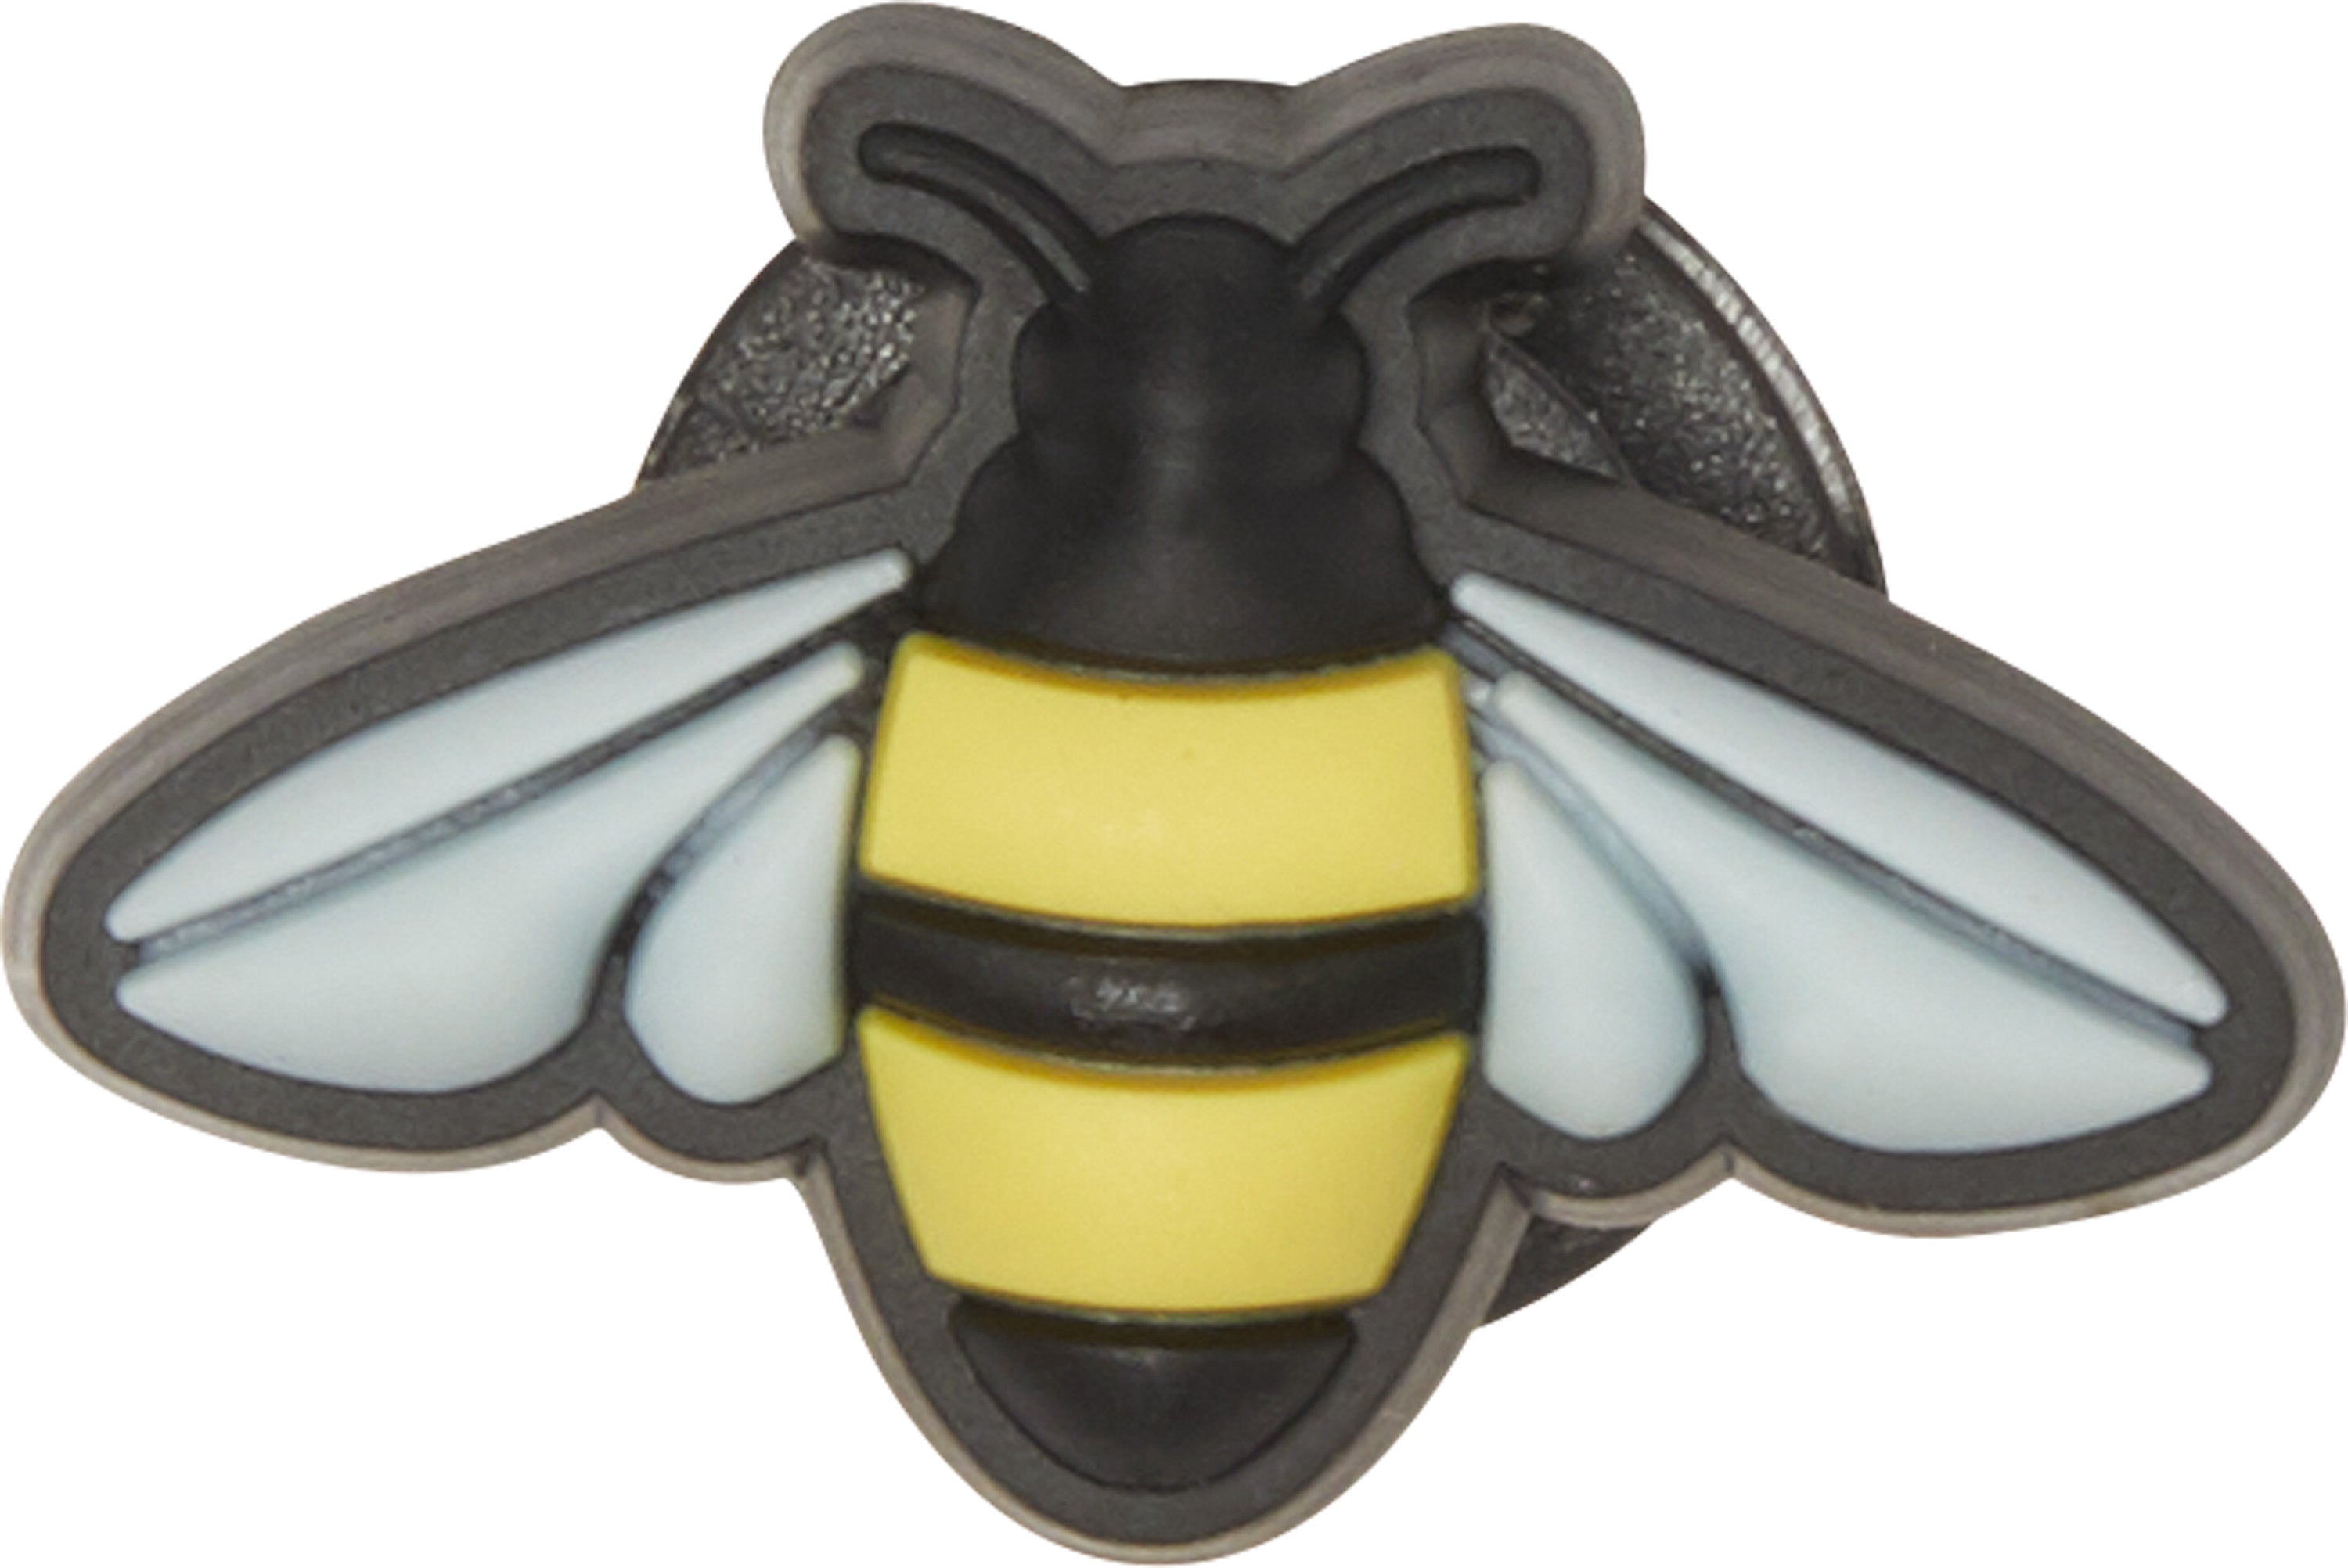 Odznáček Jibbitz - Bumble Bee